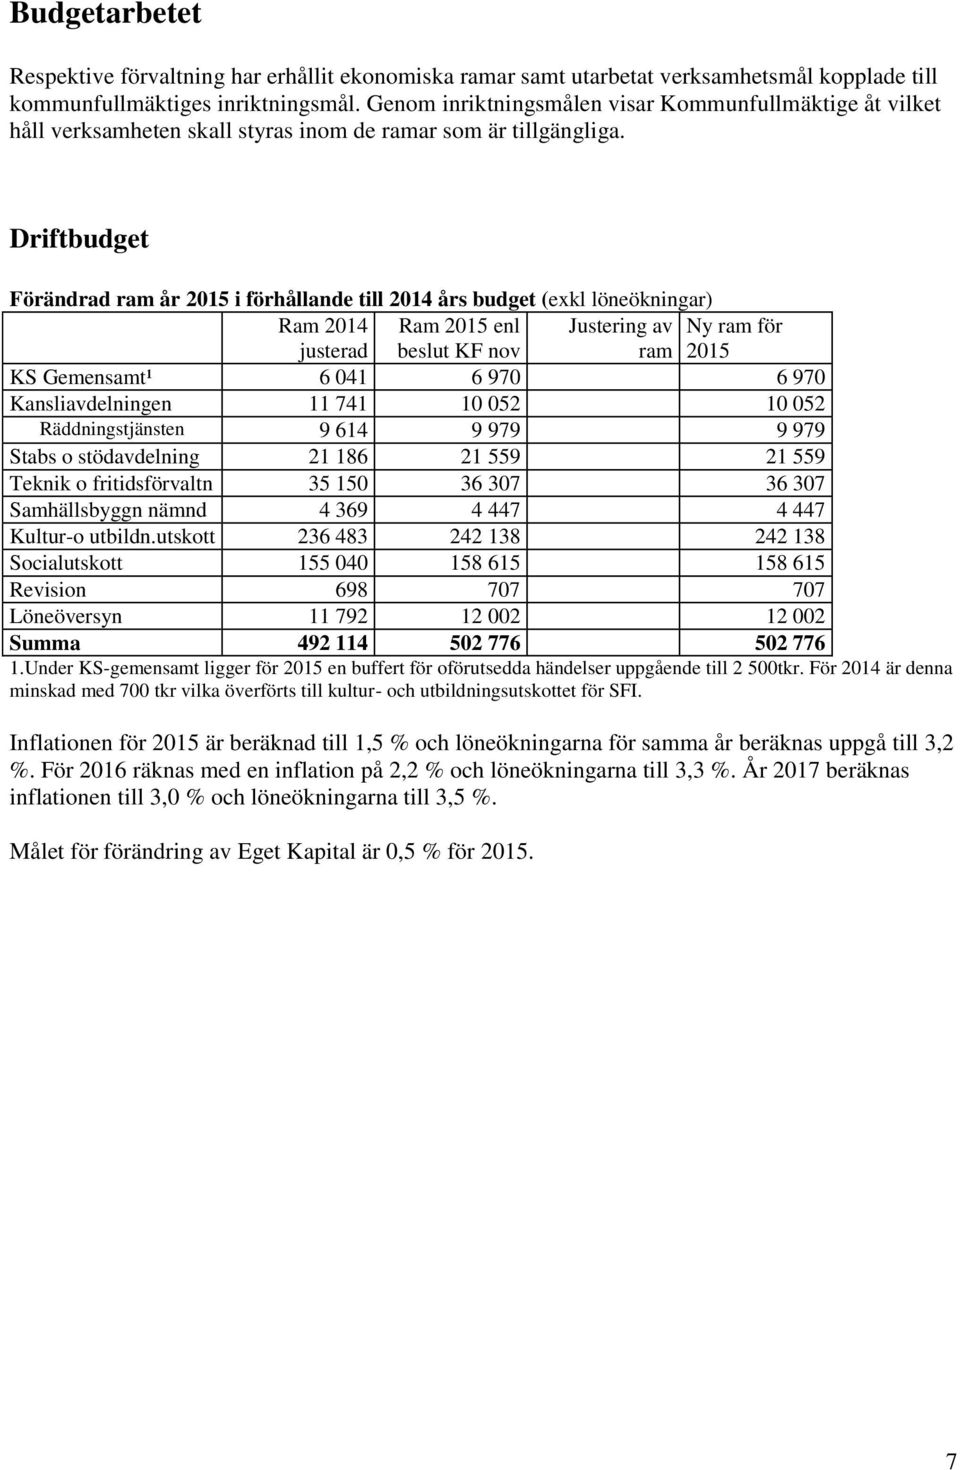 Driftbudget Förändrad ram år 2015 i förhållande till 2014 års budget (exkl löneökningar) Ram 2014 justerad Ram 2015 enl beslut KF nov Justering av Ny ram för ram 2015 KS Gemensamt¹ 6 041 6 970 6 970